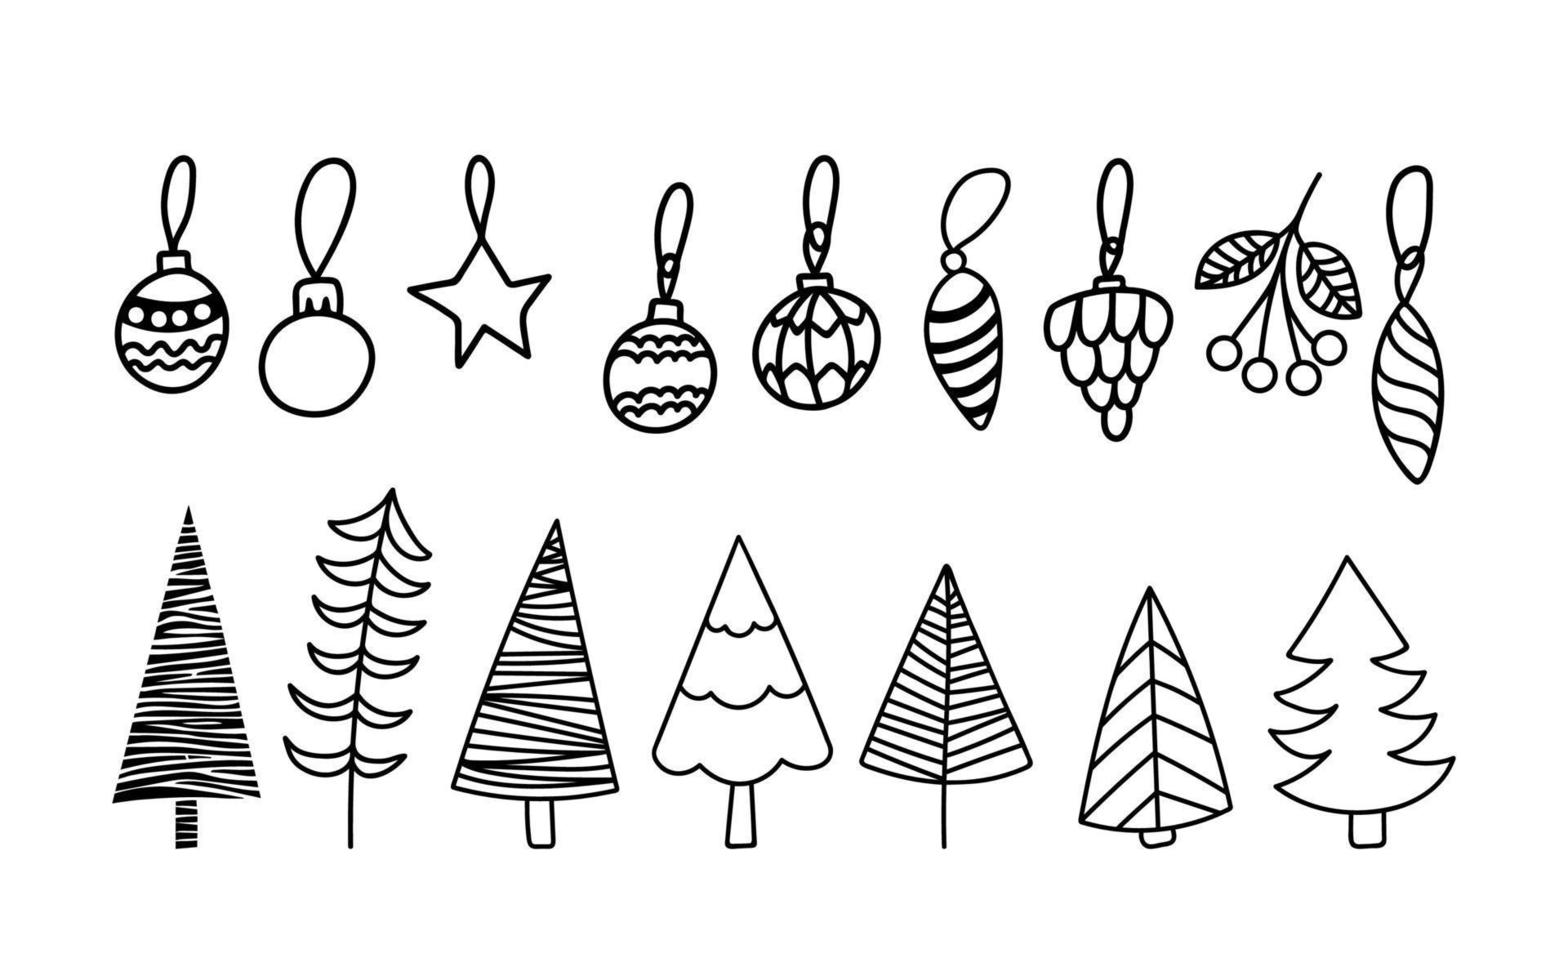 weihnachtsbaum-clipart-set mit spielzeug. handgezeichnete Vektor-Doodles vektor